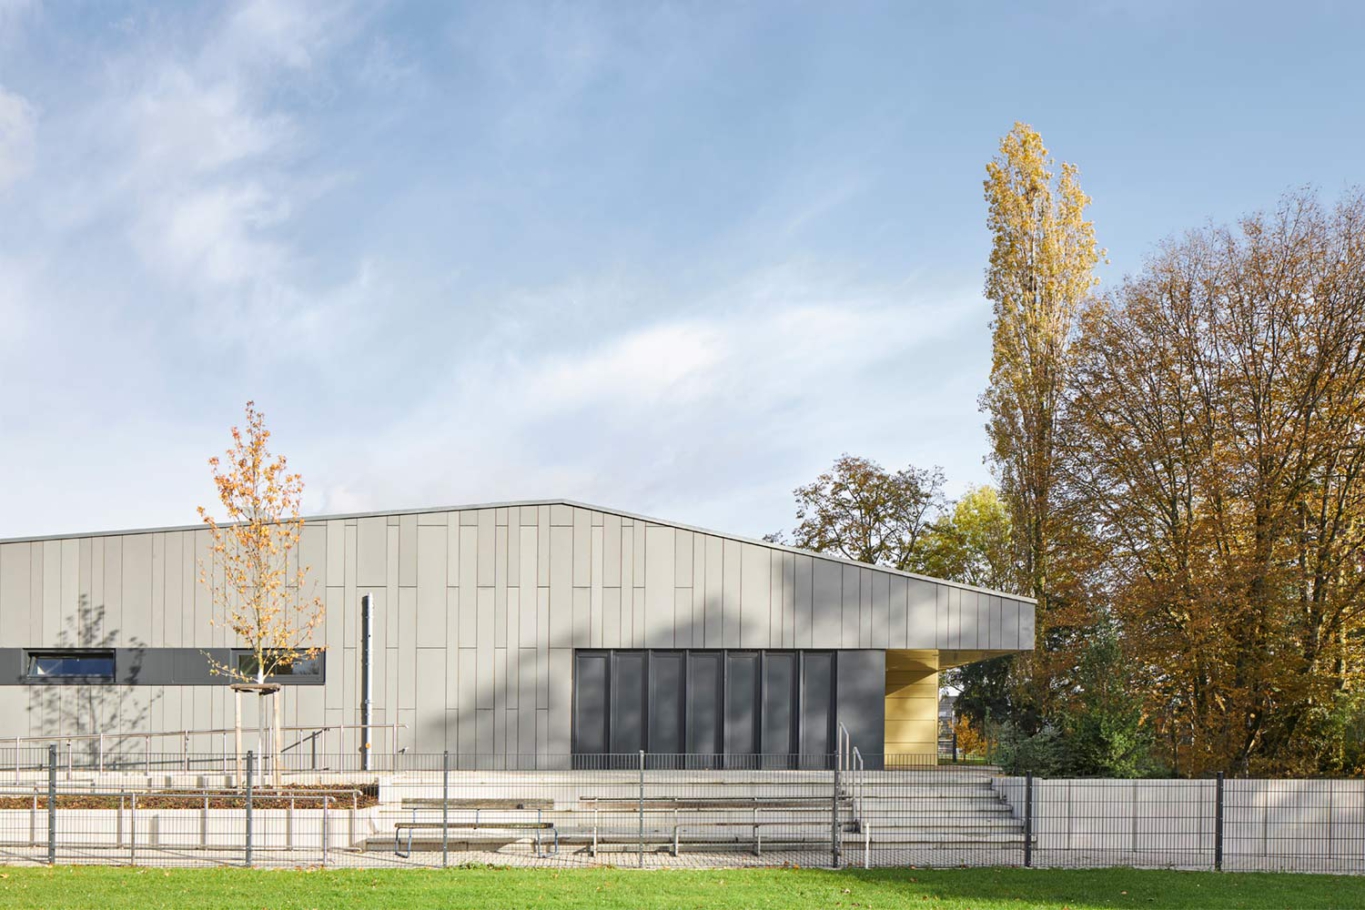 Lioba Schneider Architekturfotografie: Neubau eines Vereinsheims für einen Fussballclub in Monheim. Die Hülle ist aus anthrazitfarbenen Metallpanelen gestaltet.